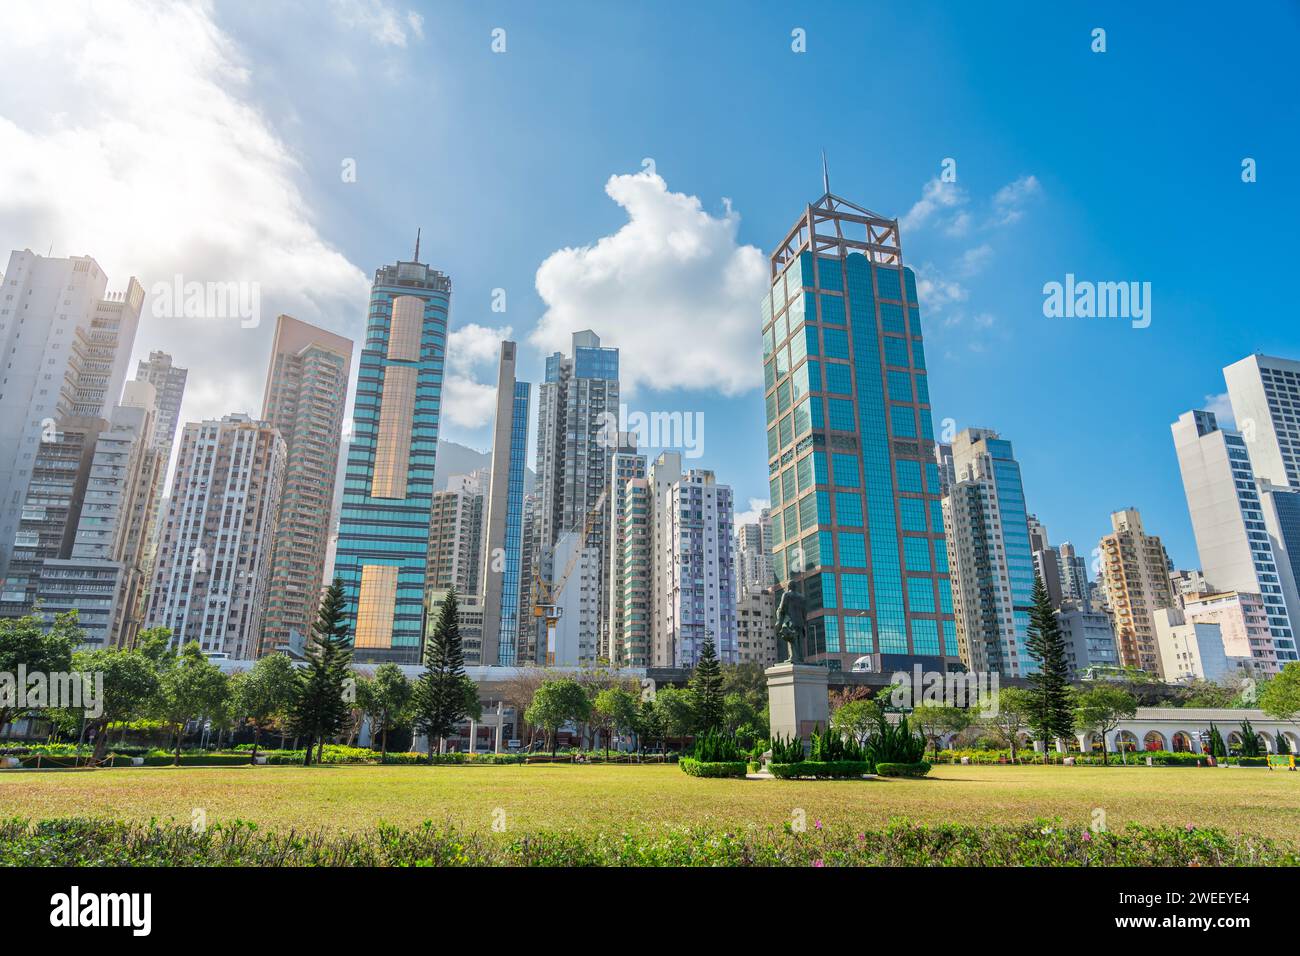 Large vue Hong Kong de gratte-ciel et quartier résidentiel place dans le parc de la ville avec monument Sun Yat Sen Statue Banque D'Images